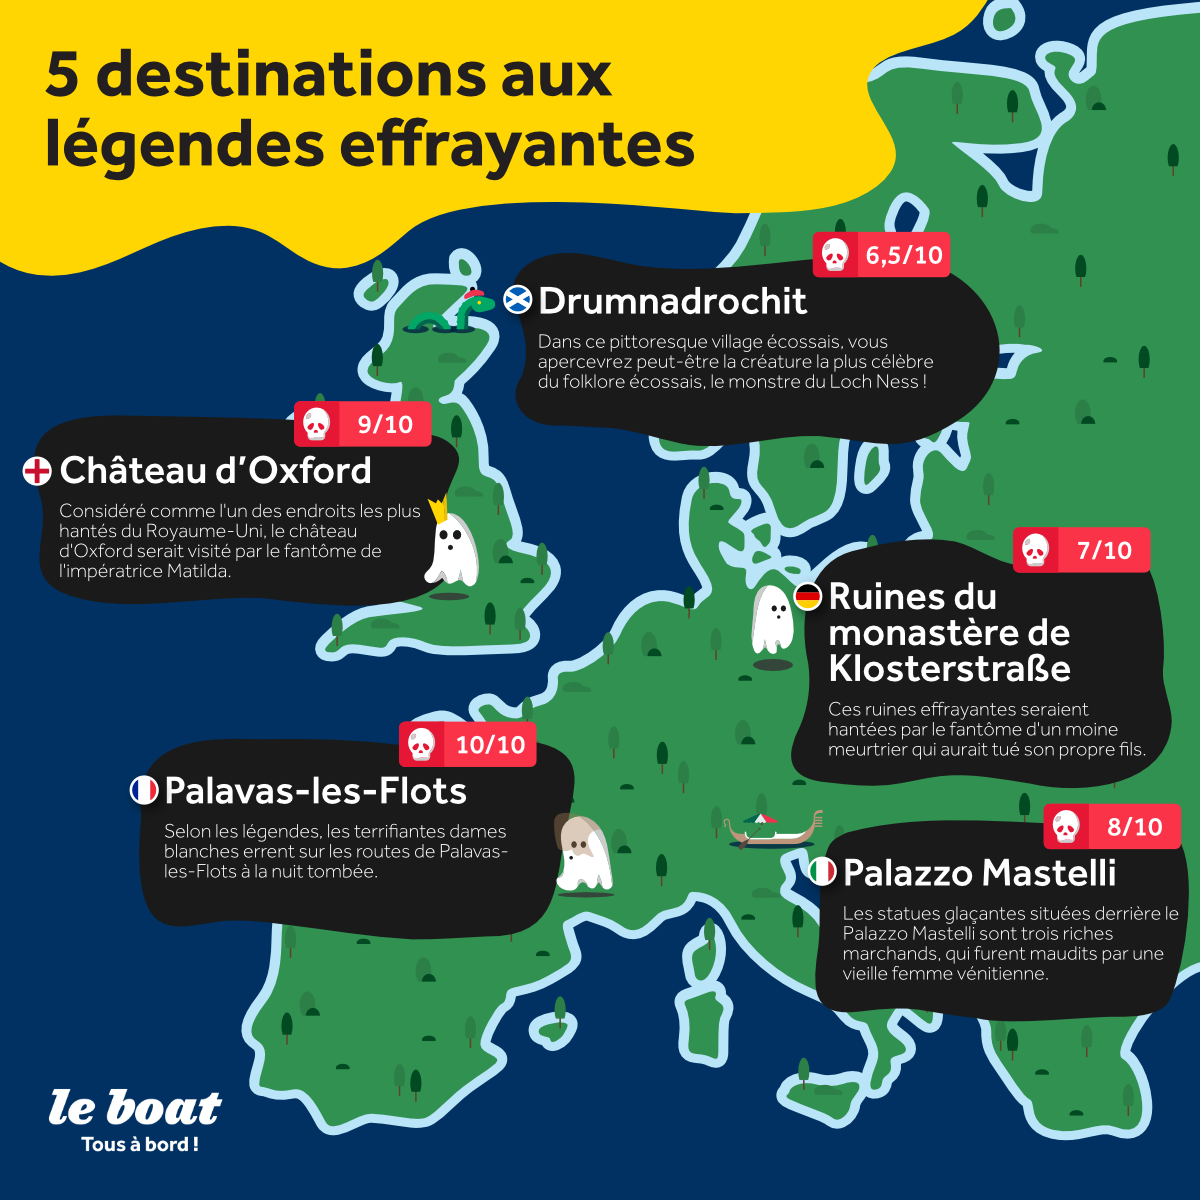 5 destinations européennes aux légendes folkloriques effrayantes 